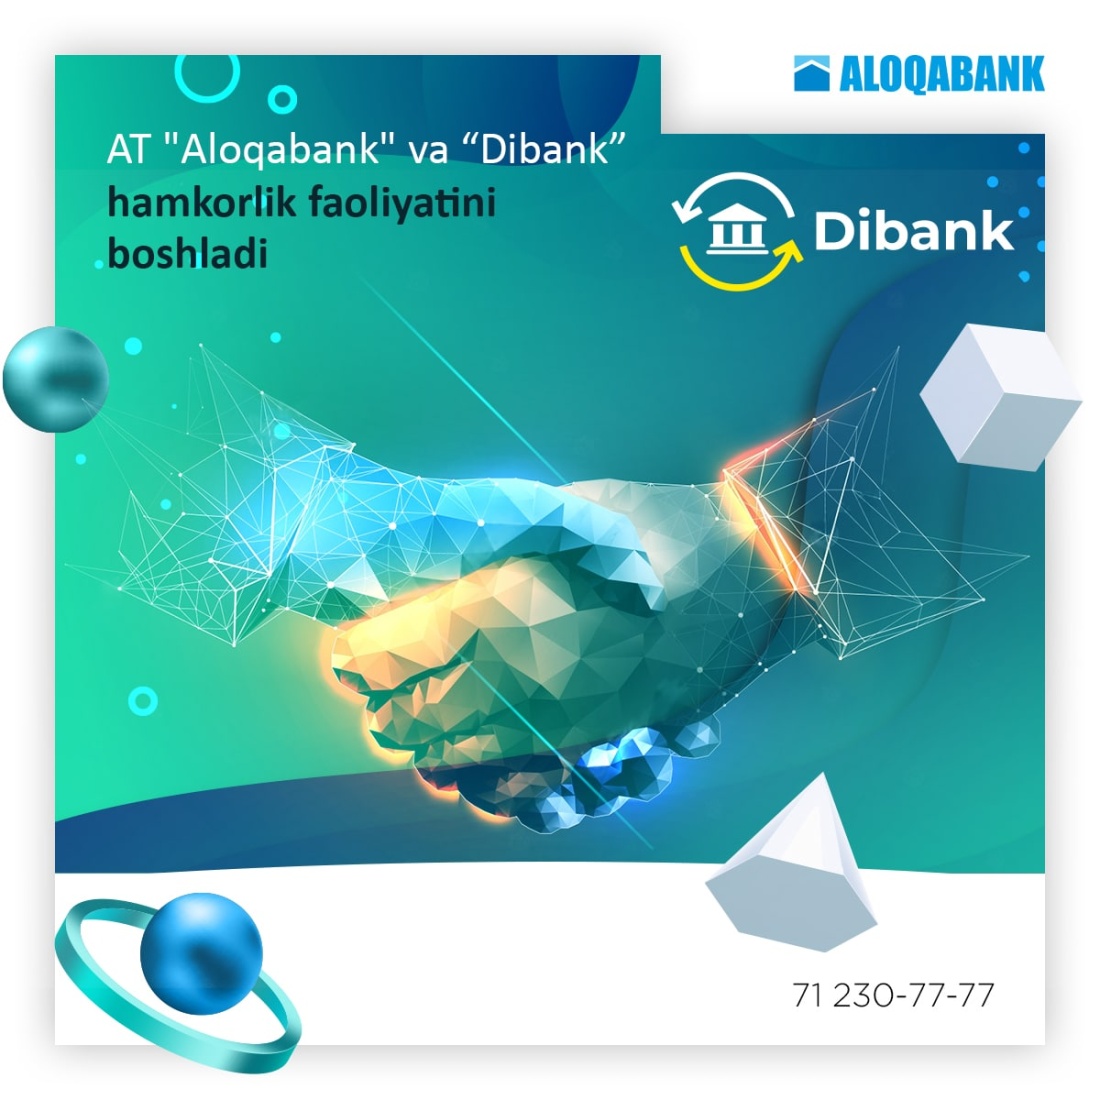 АК "Алокабанк" и “Dibank” начали партнерские отношения